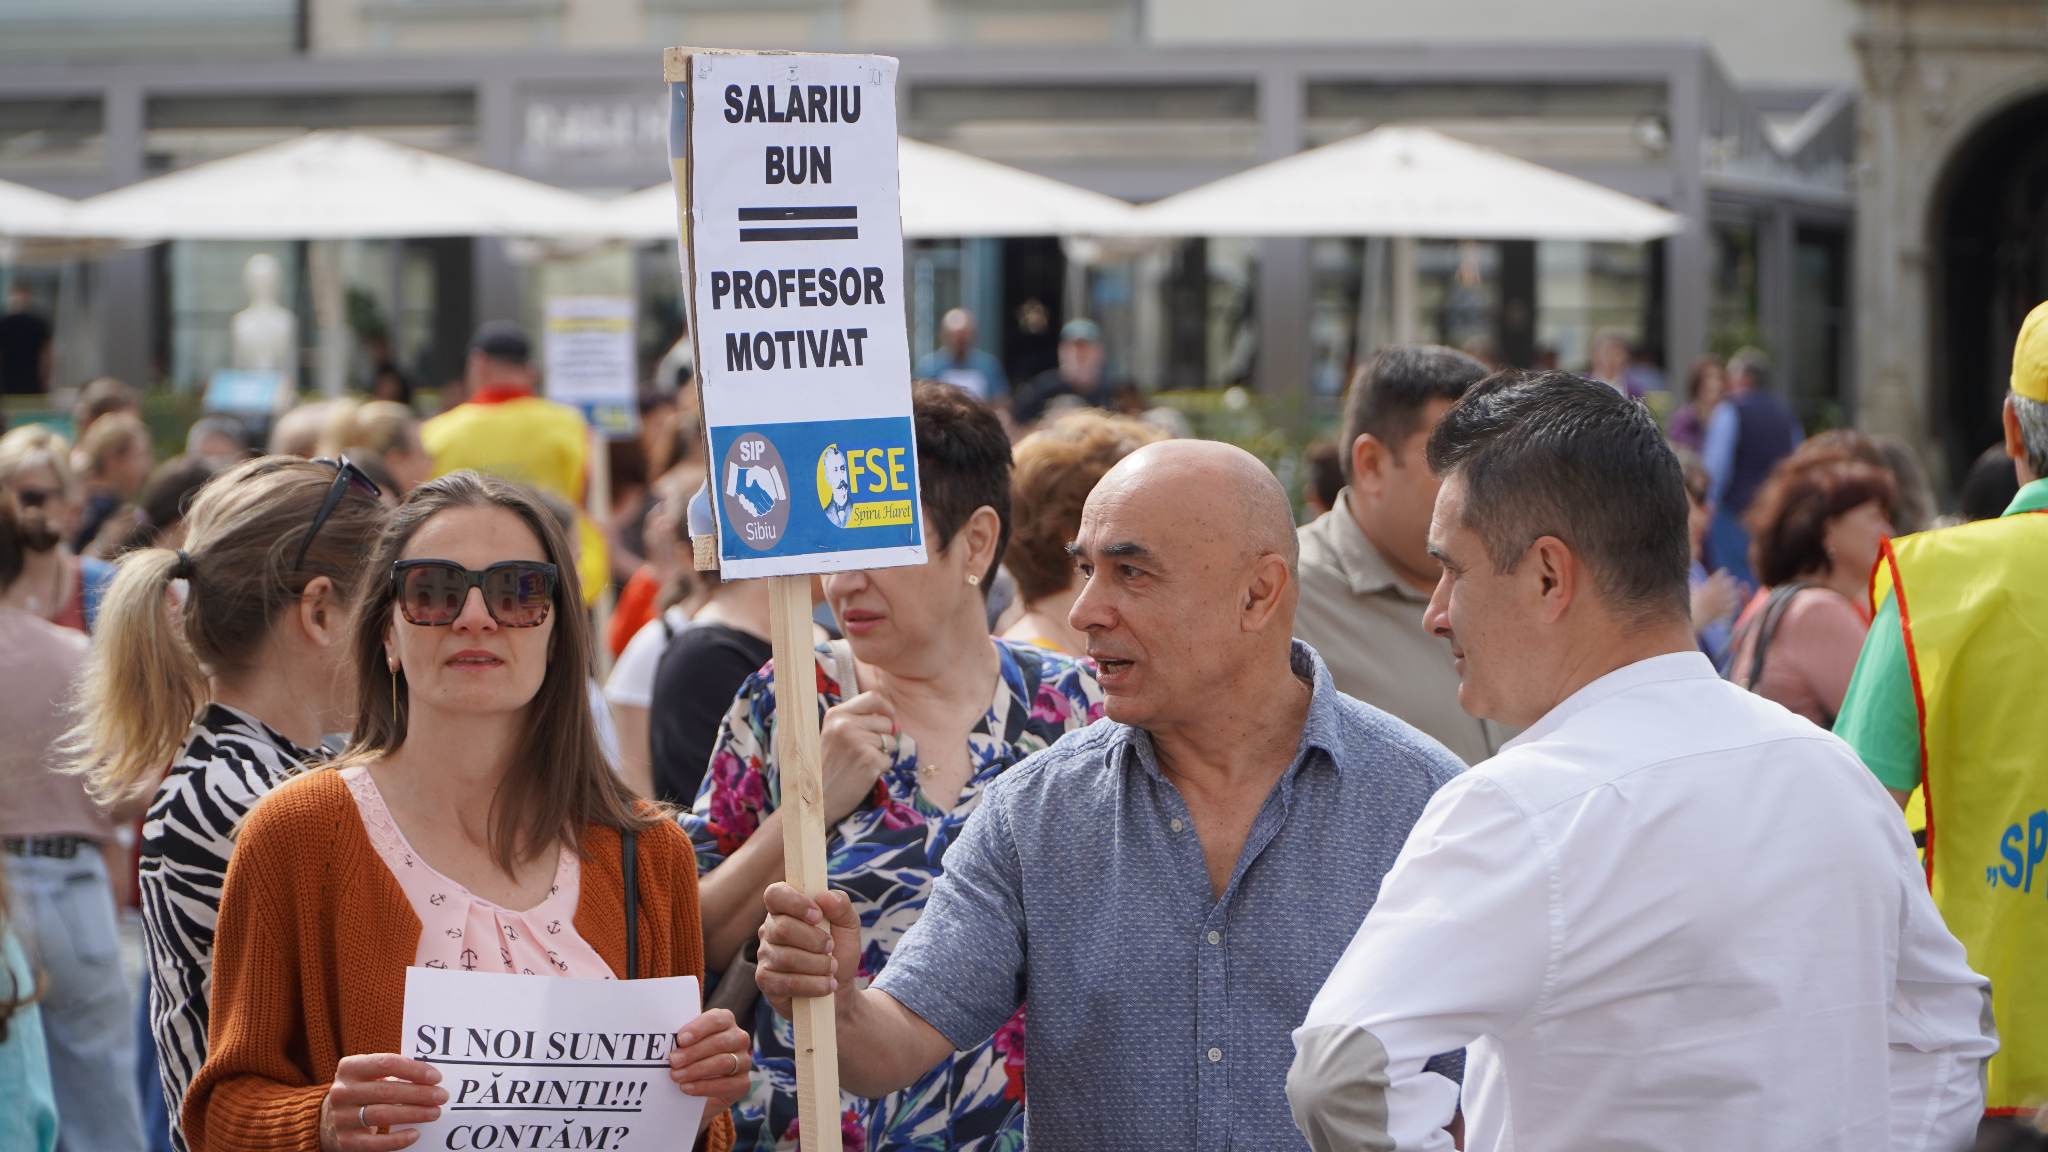 update foto: peste 1.000 de profesori protestează în piața mare - „copiii sunt cei care vor plăti”